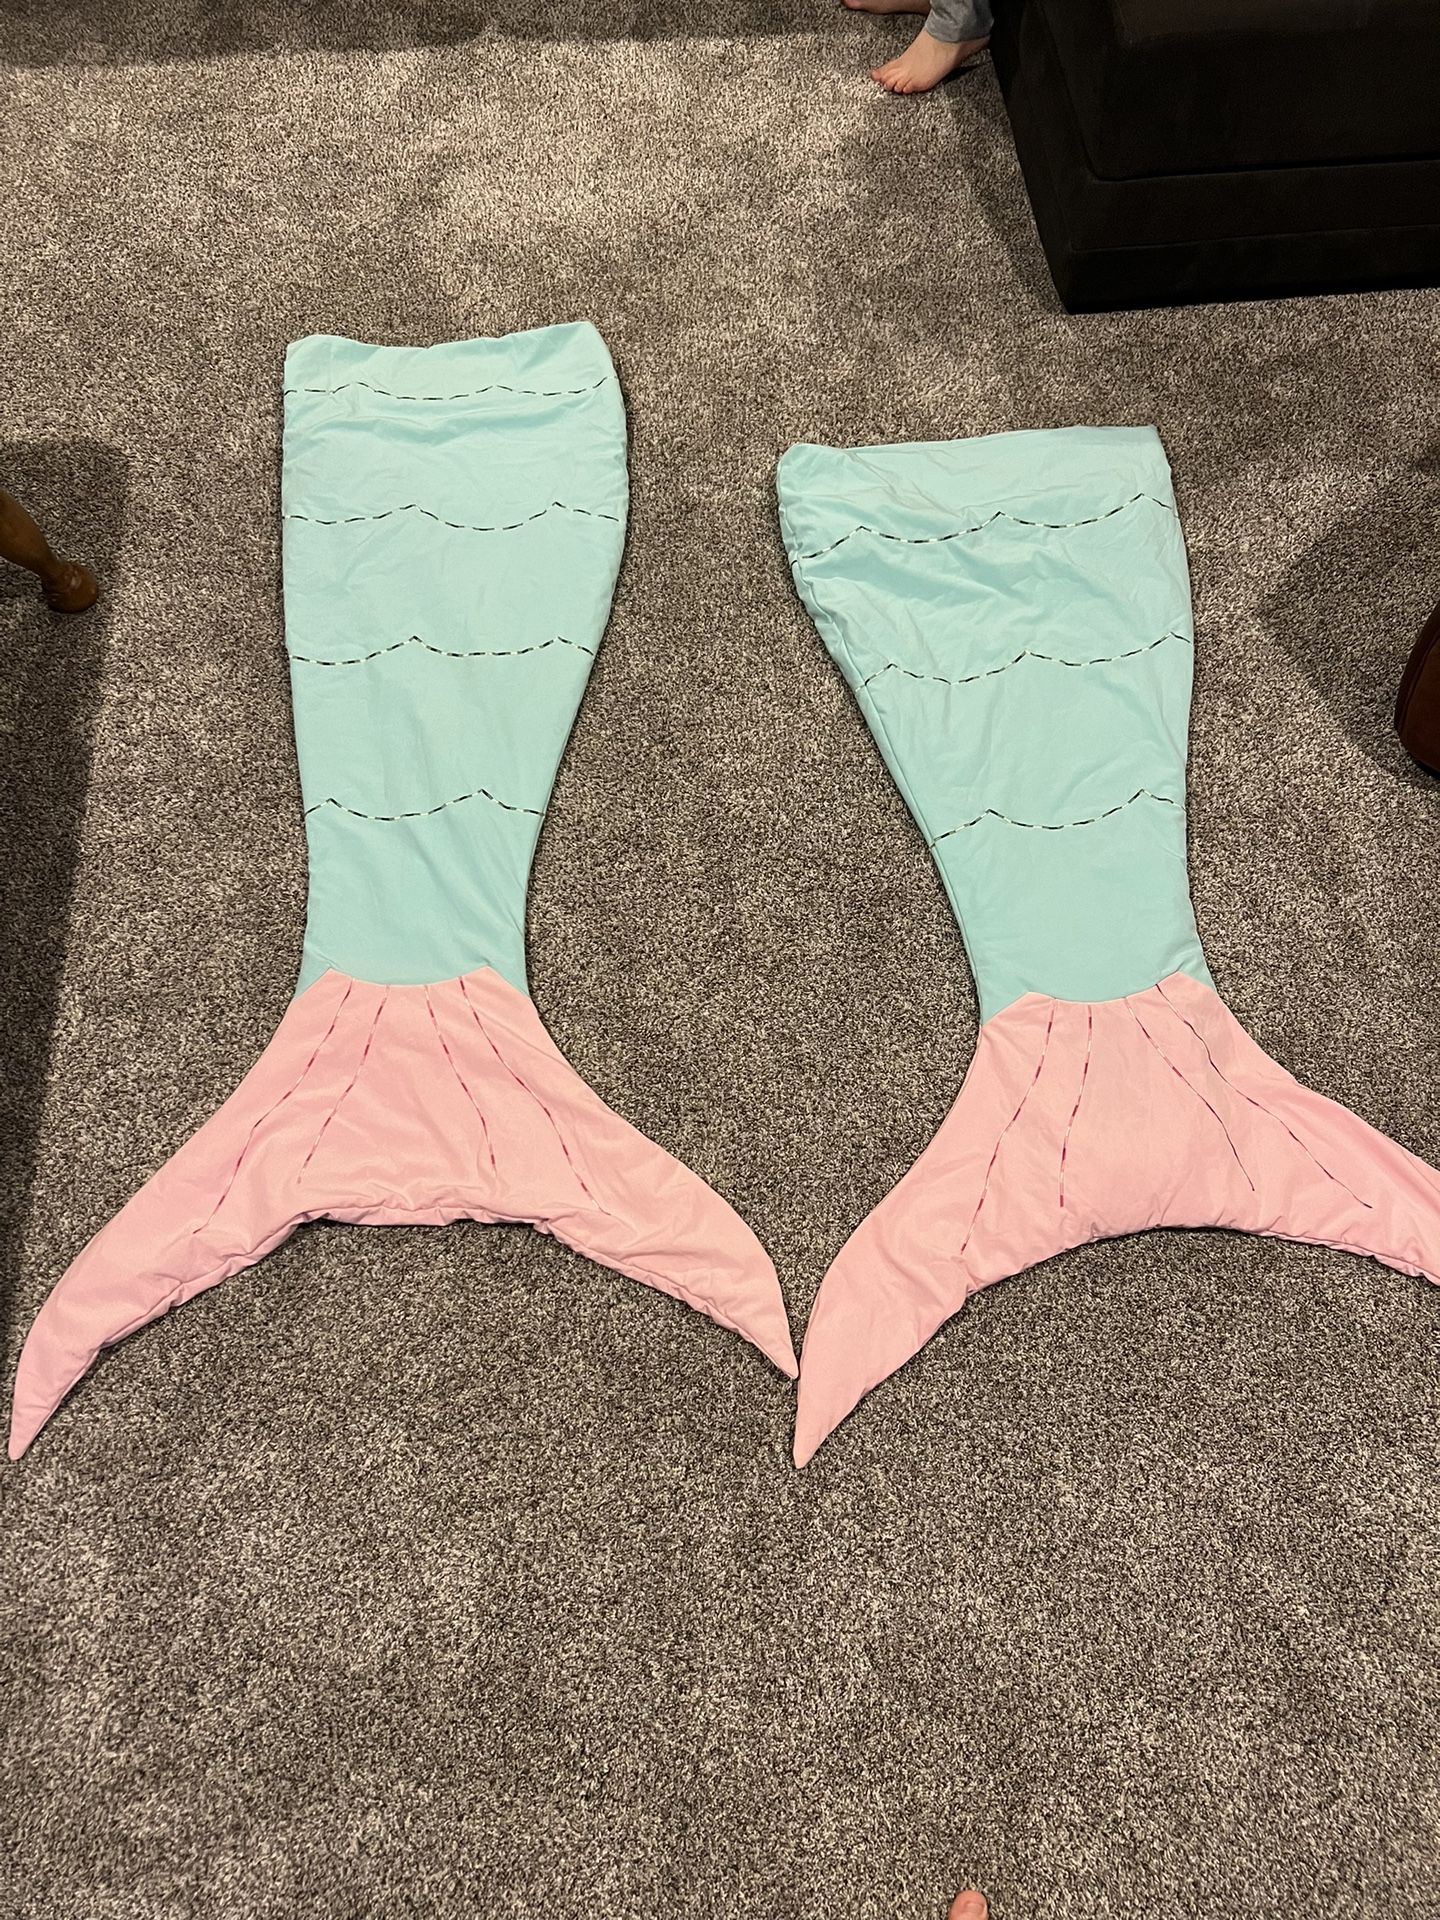 Mermaid Tail Kids Blankets